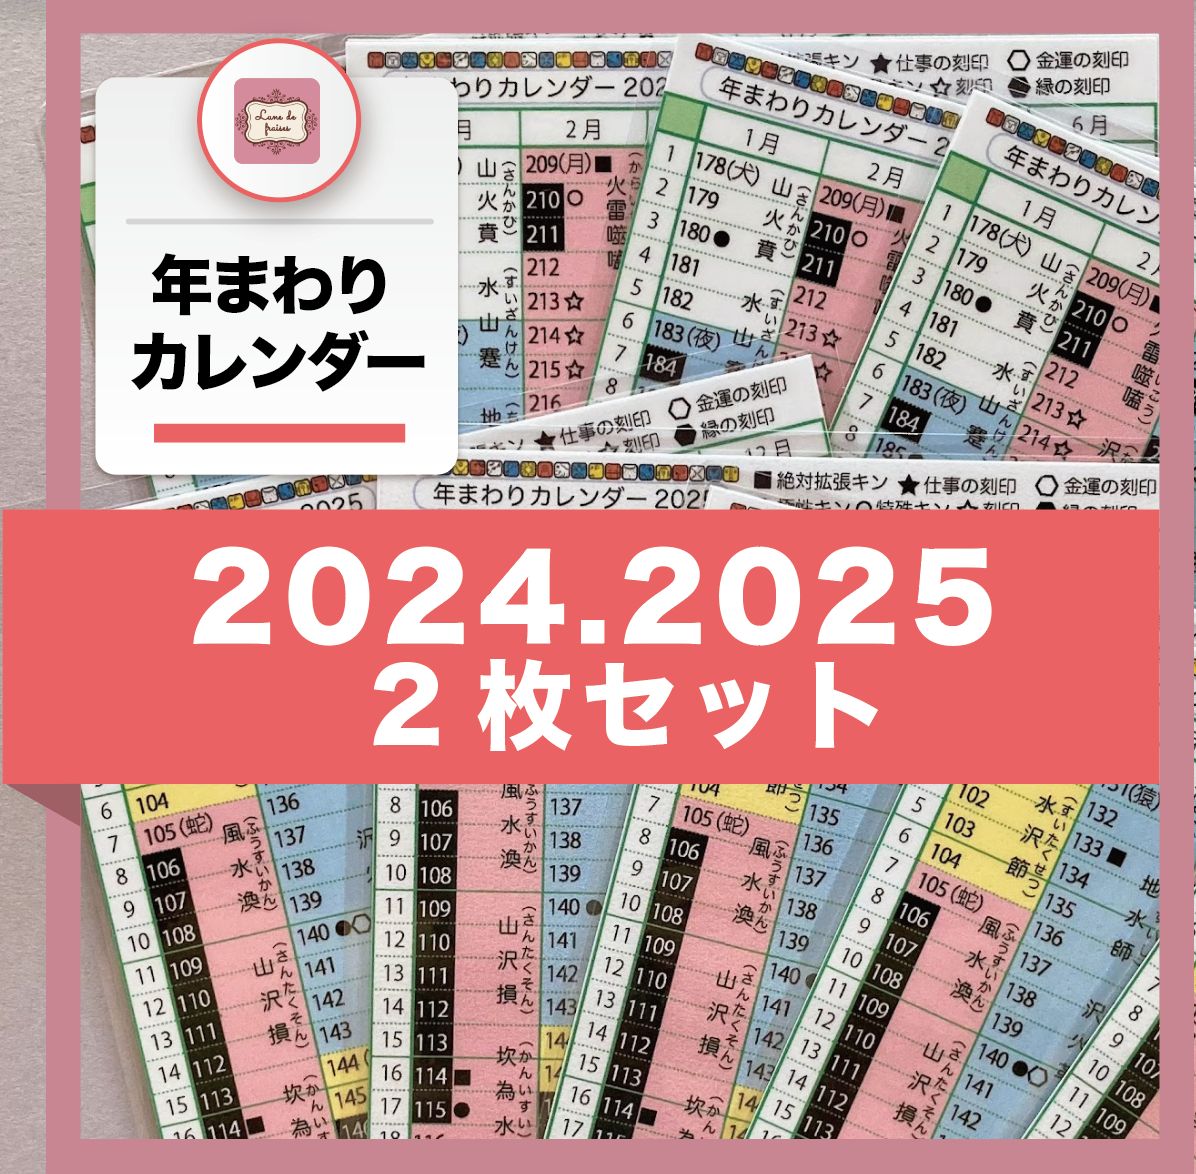 マヤ暦☆年まわりカレンダー【2枚セット】☆2024・2025年 - メルカリ